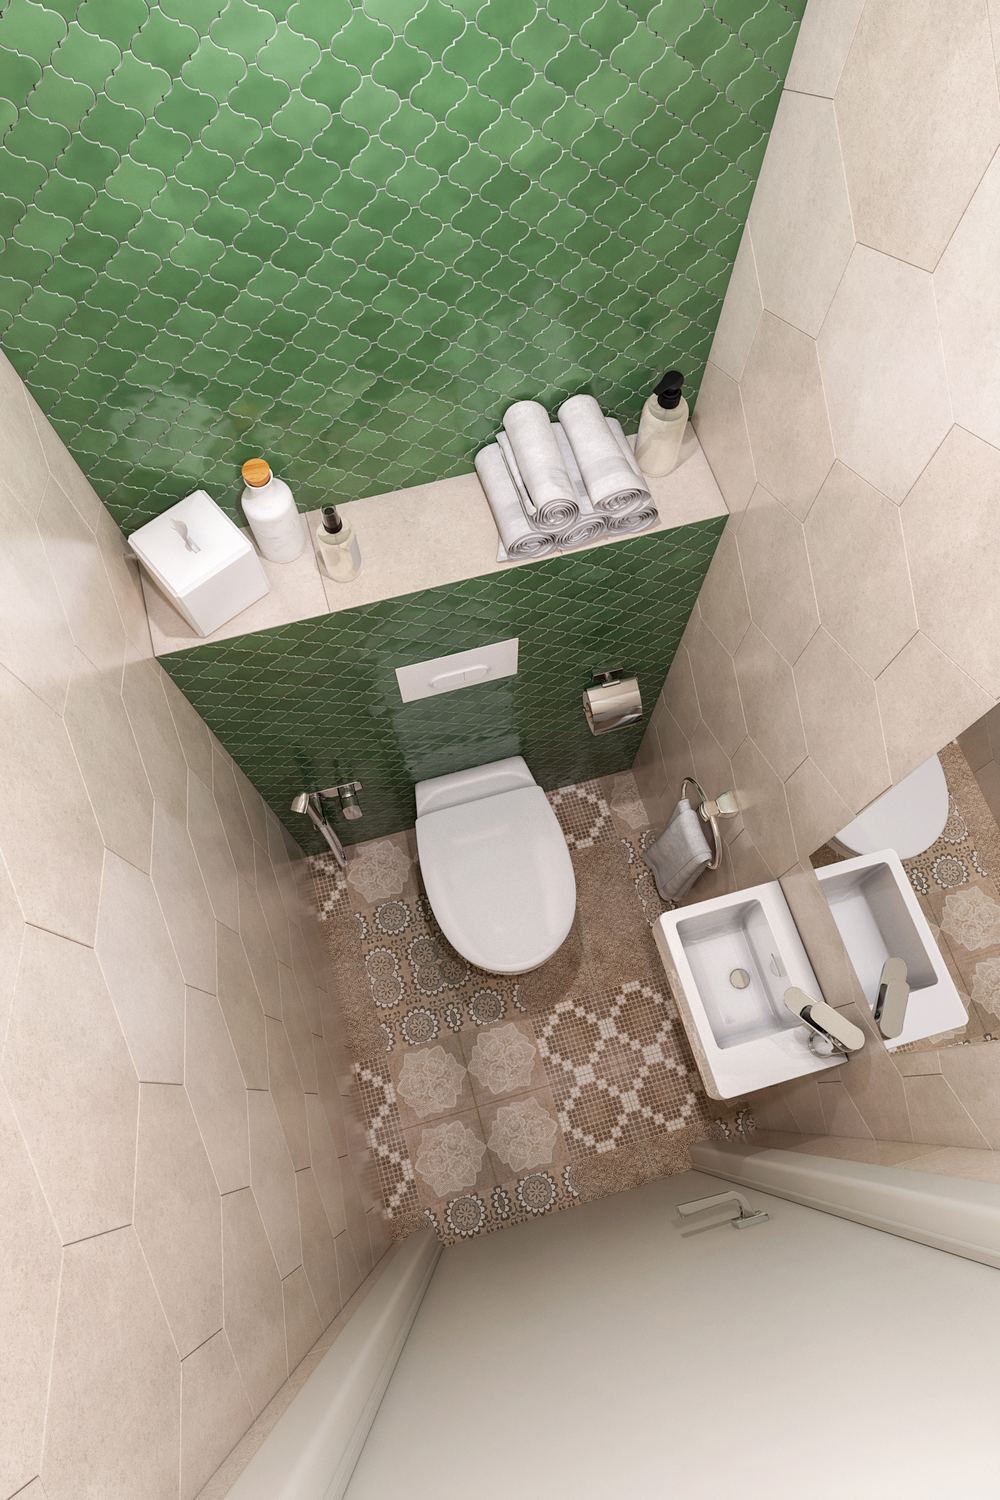 A bézs csempe a falon nagyobb méretű hatszögletű lapokból áll, a WC mögött a fal zöld, kisebb formátumú csempét kapott mutatós formával, a padlóburkolat mintás, a szaniterek fehérek